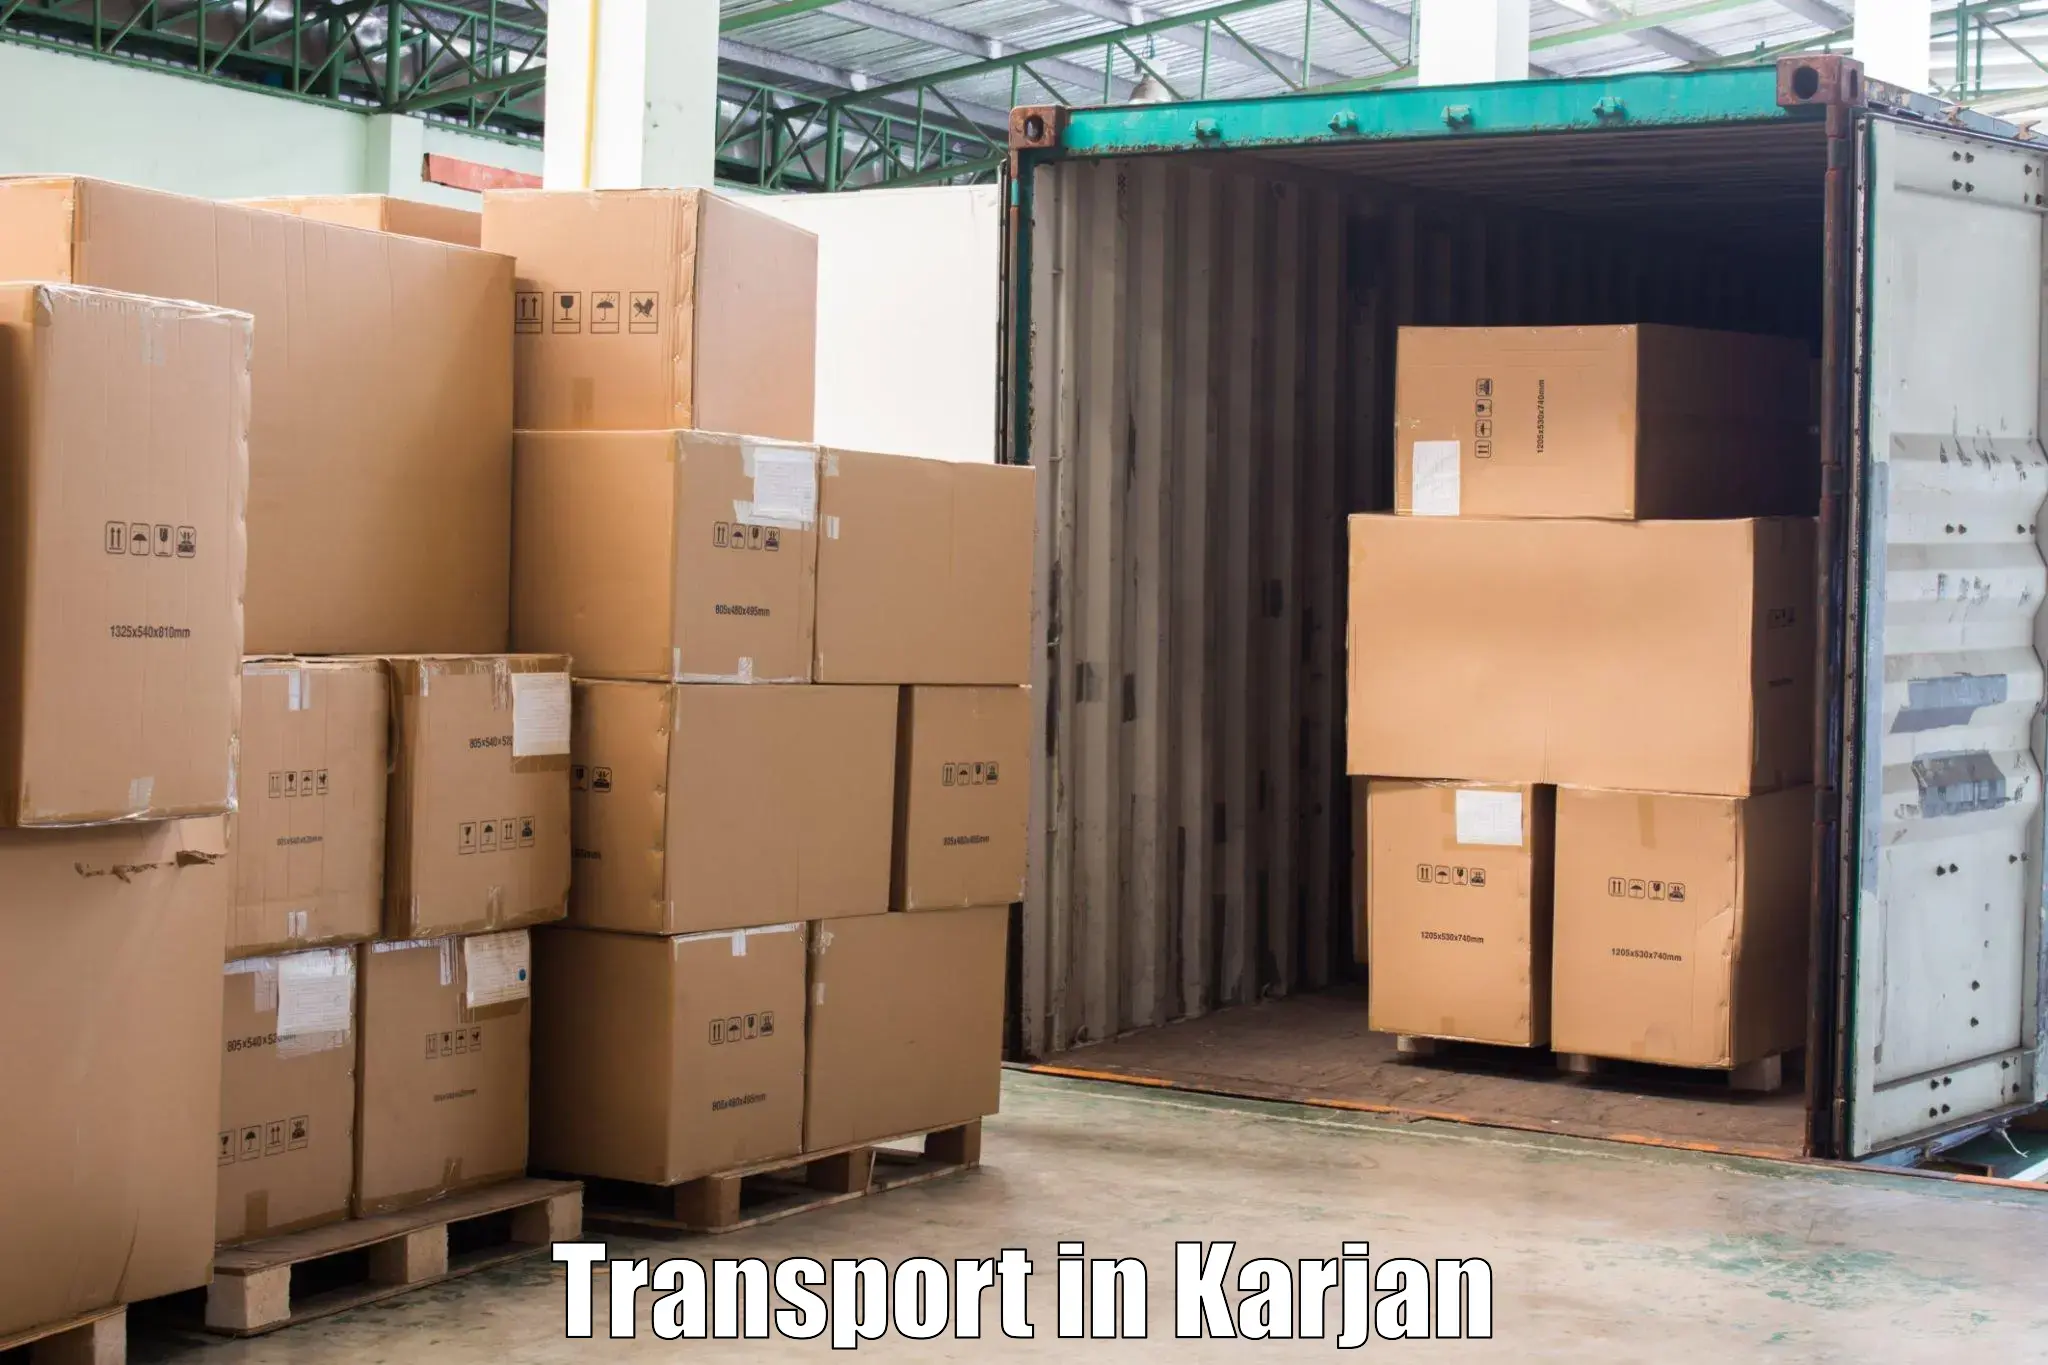 Nearest transport service in Karjan